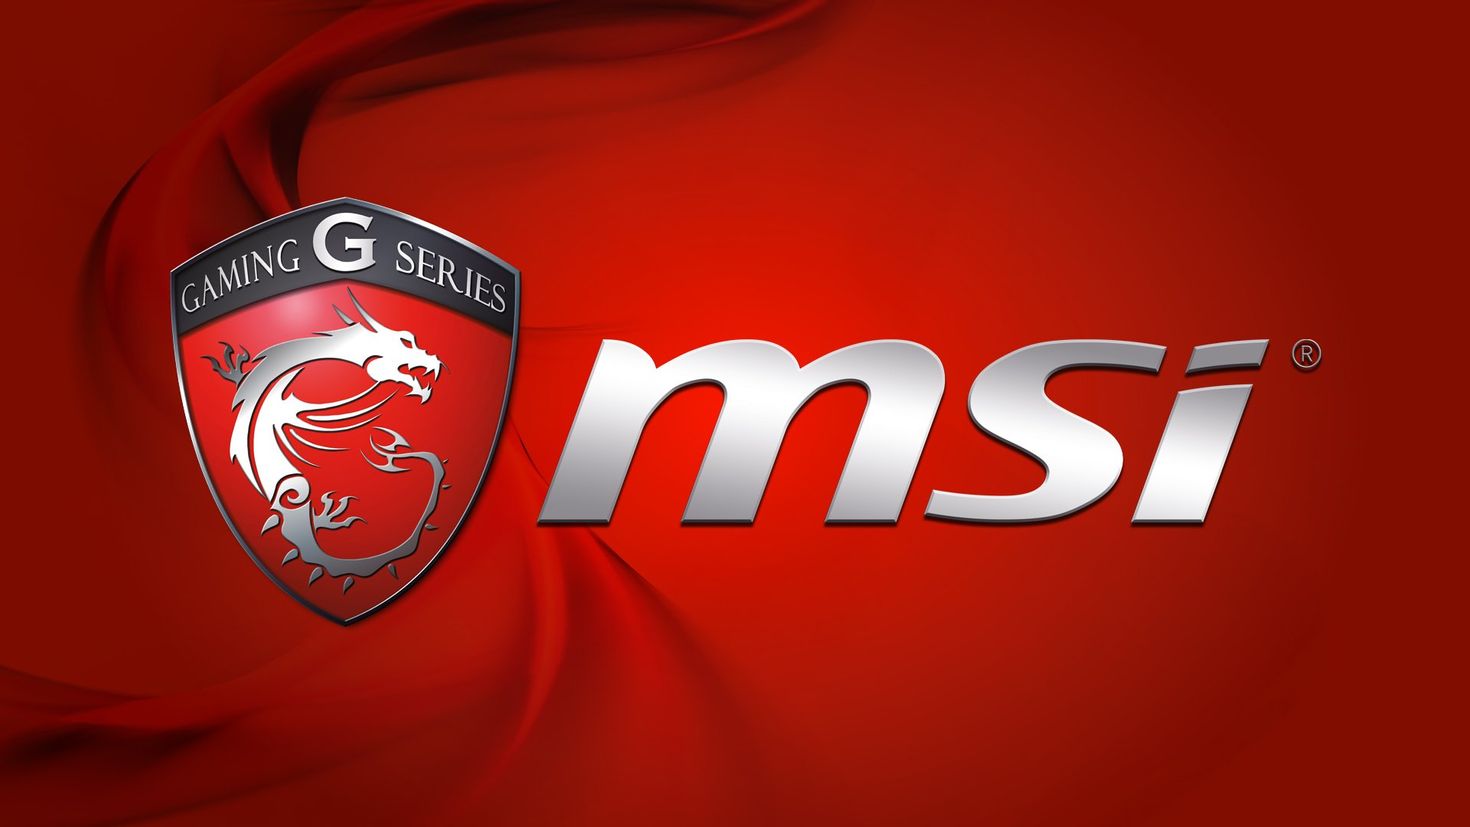 Product msi. MSI logo 1920 1080. MSI Wallpaper 1920 1080. MSI Wallpaper 4k. Логотип MSI 4k.